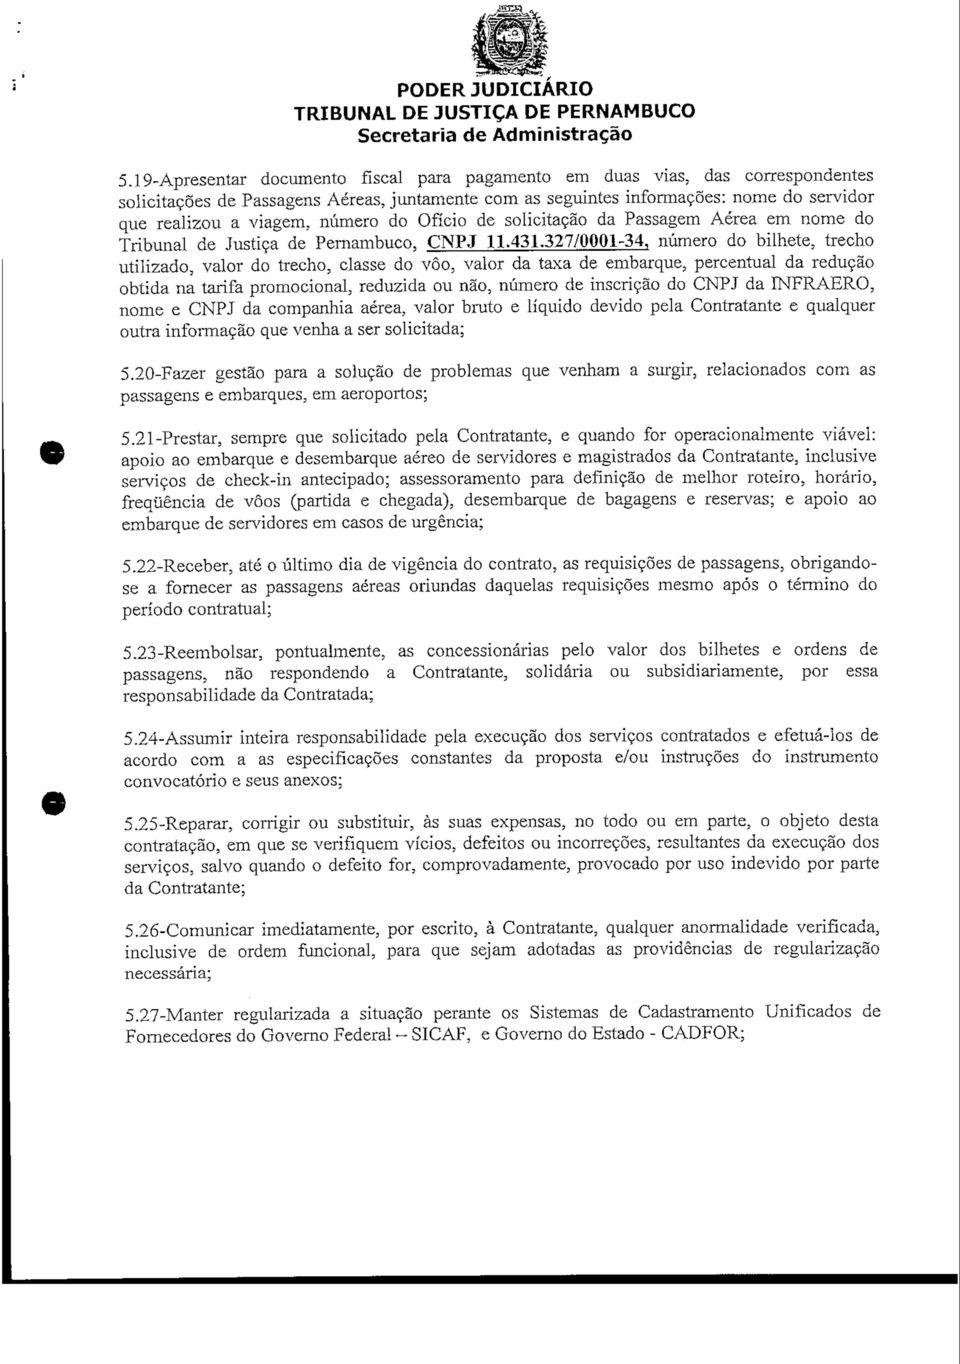 Tribunal de Justiça de Pernambuco, CNPJ 11.